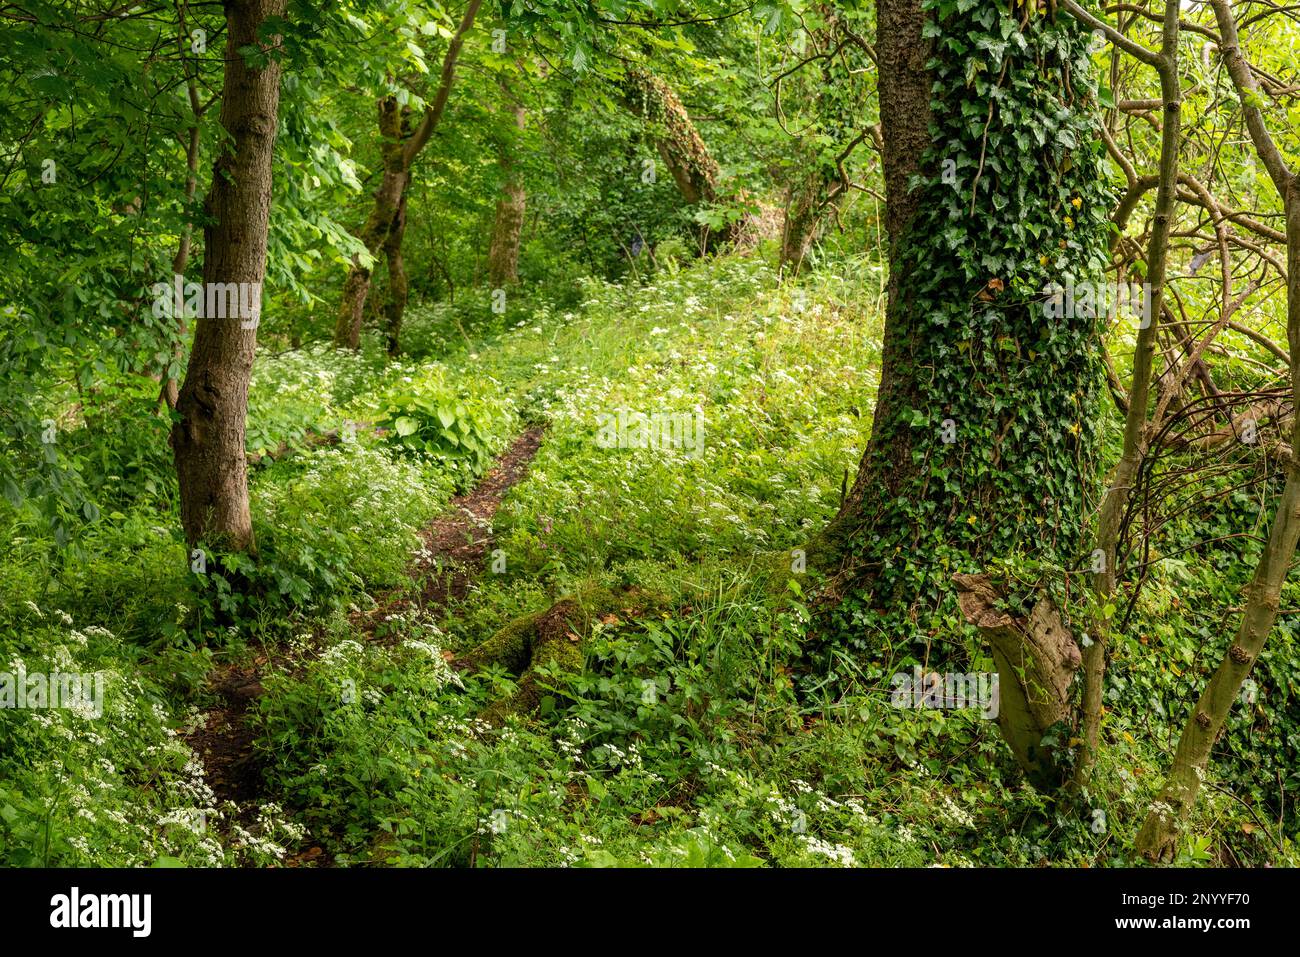 Sentier de randonnée en forêt vierge bordé d'un tronc d'arbres couvert de lierre, section du sentier de randonnée 'ith-HiLS-Weg', Weserbergland, Allemagne Banque D'Images